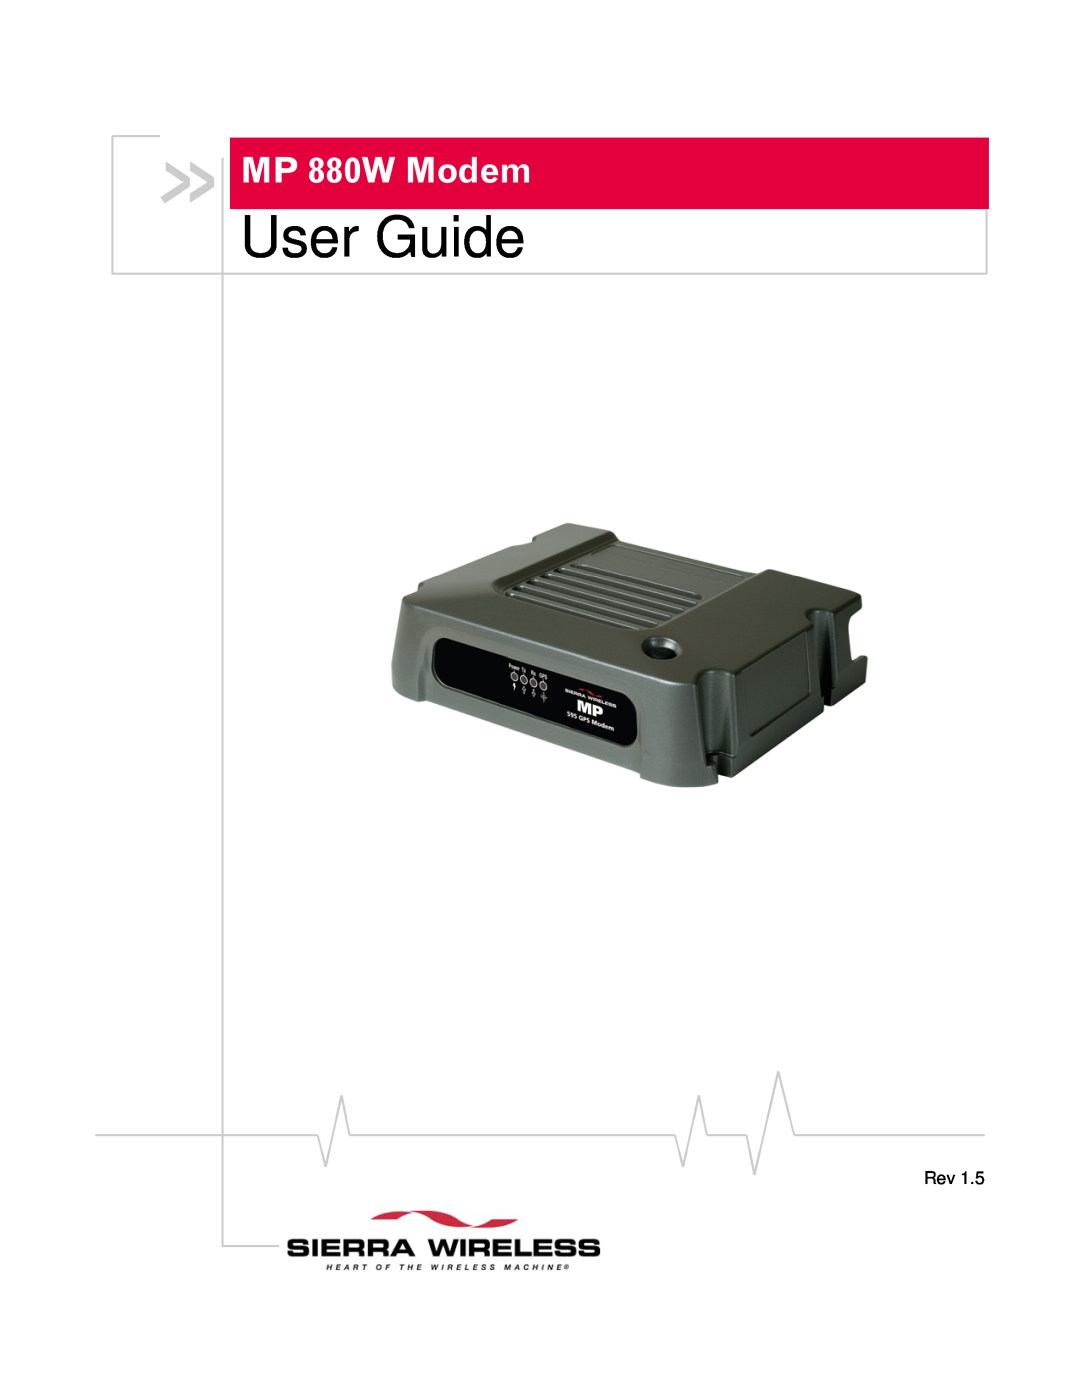 Sierra Wireless manual User Guide, MP 880W Modem 